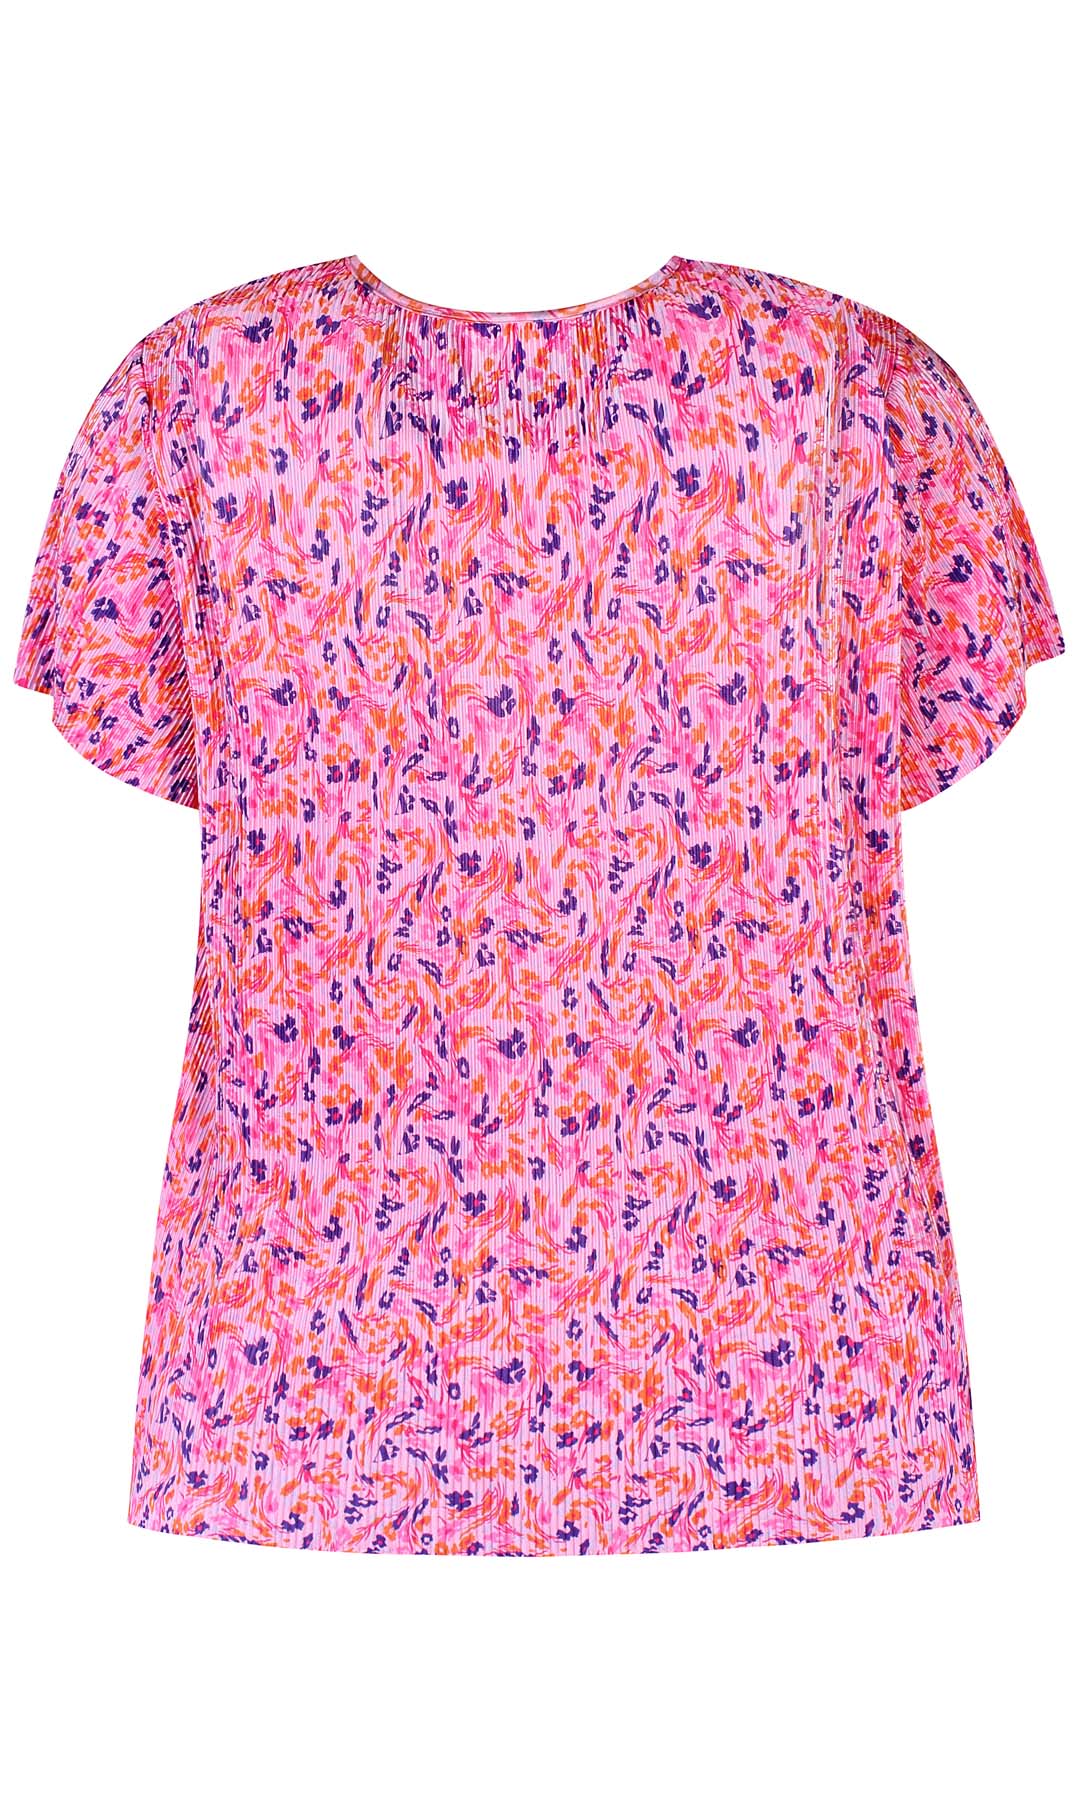 Julie 80 - T-shirt - Pink